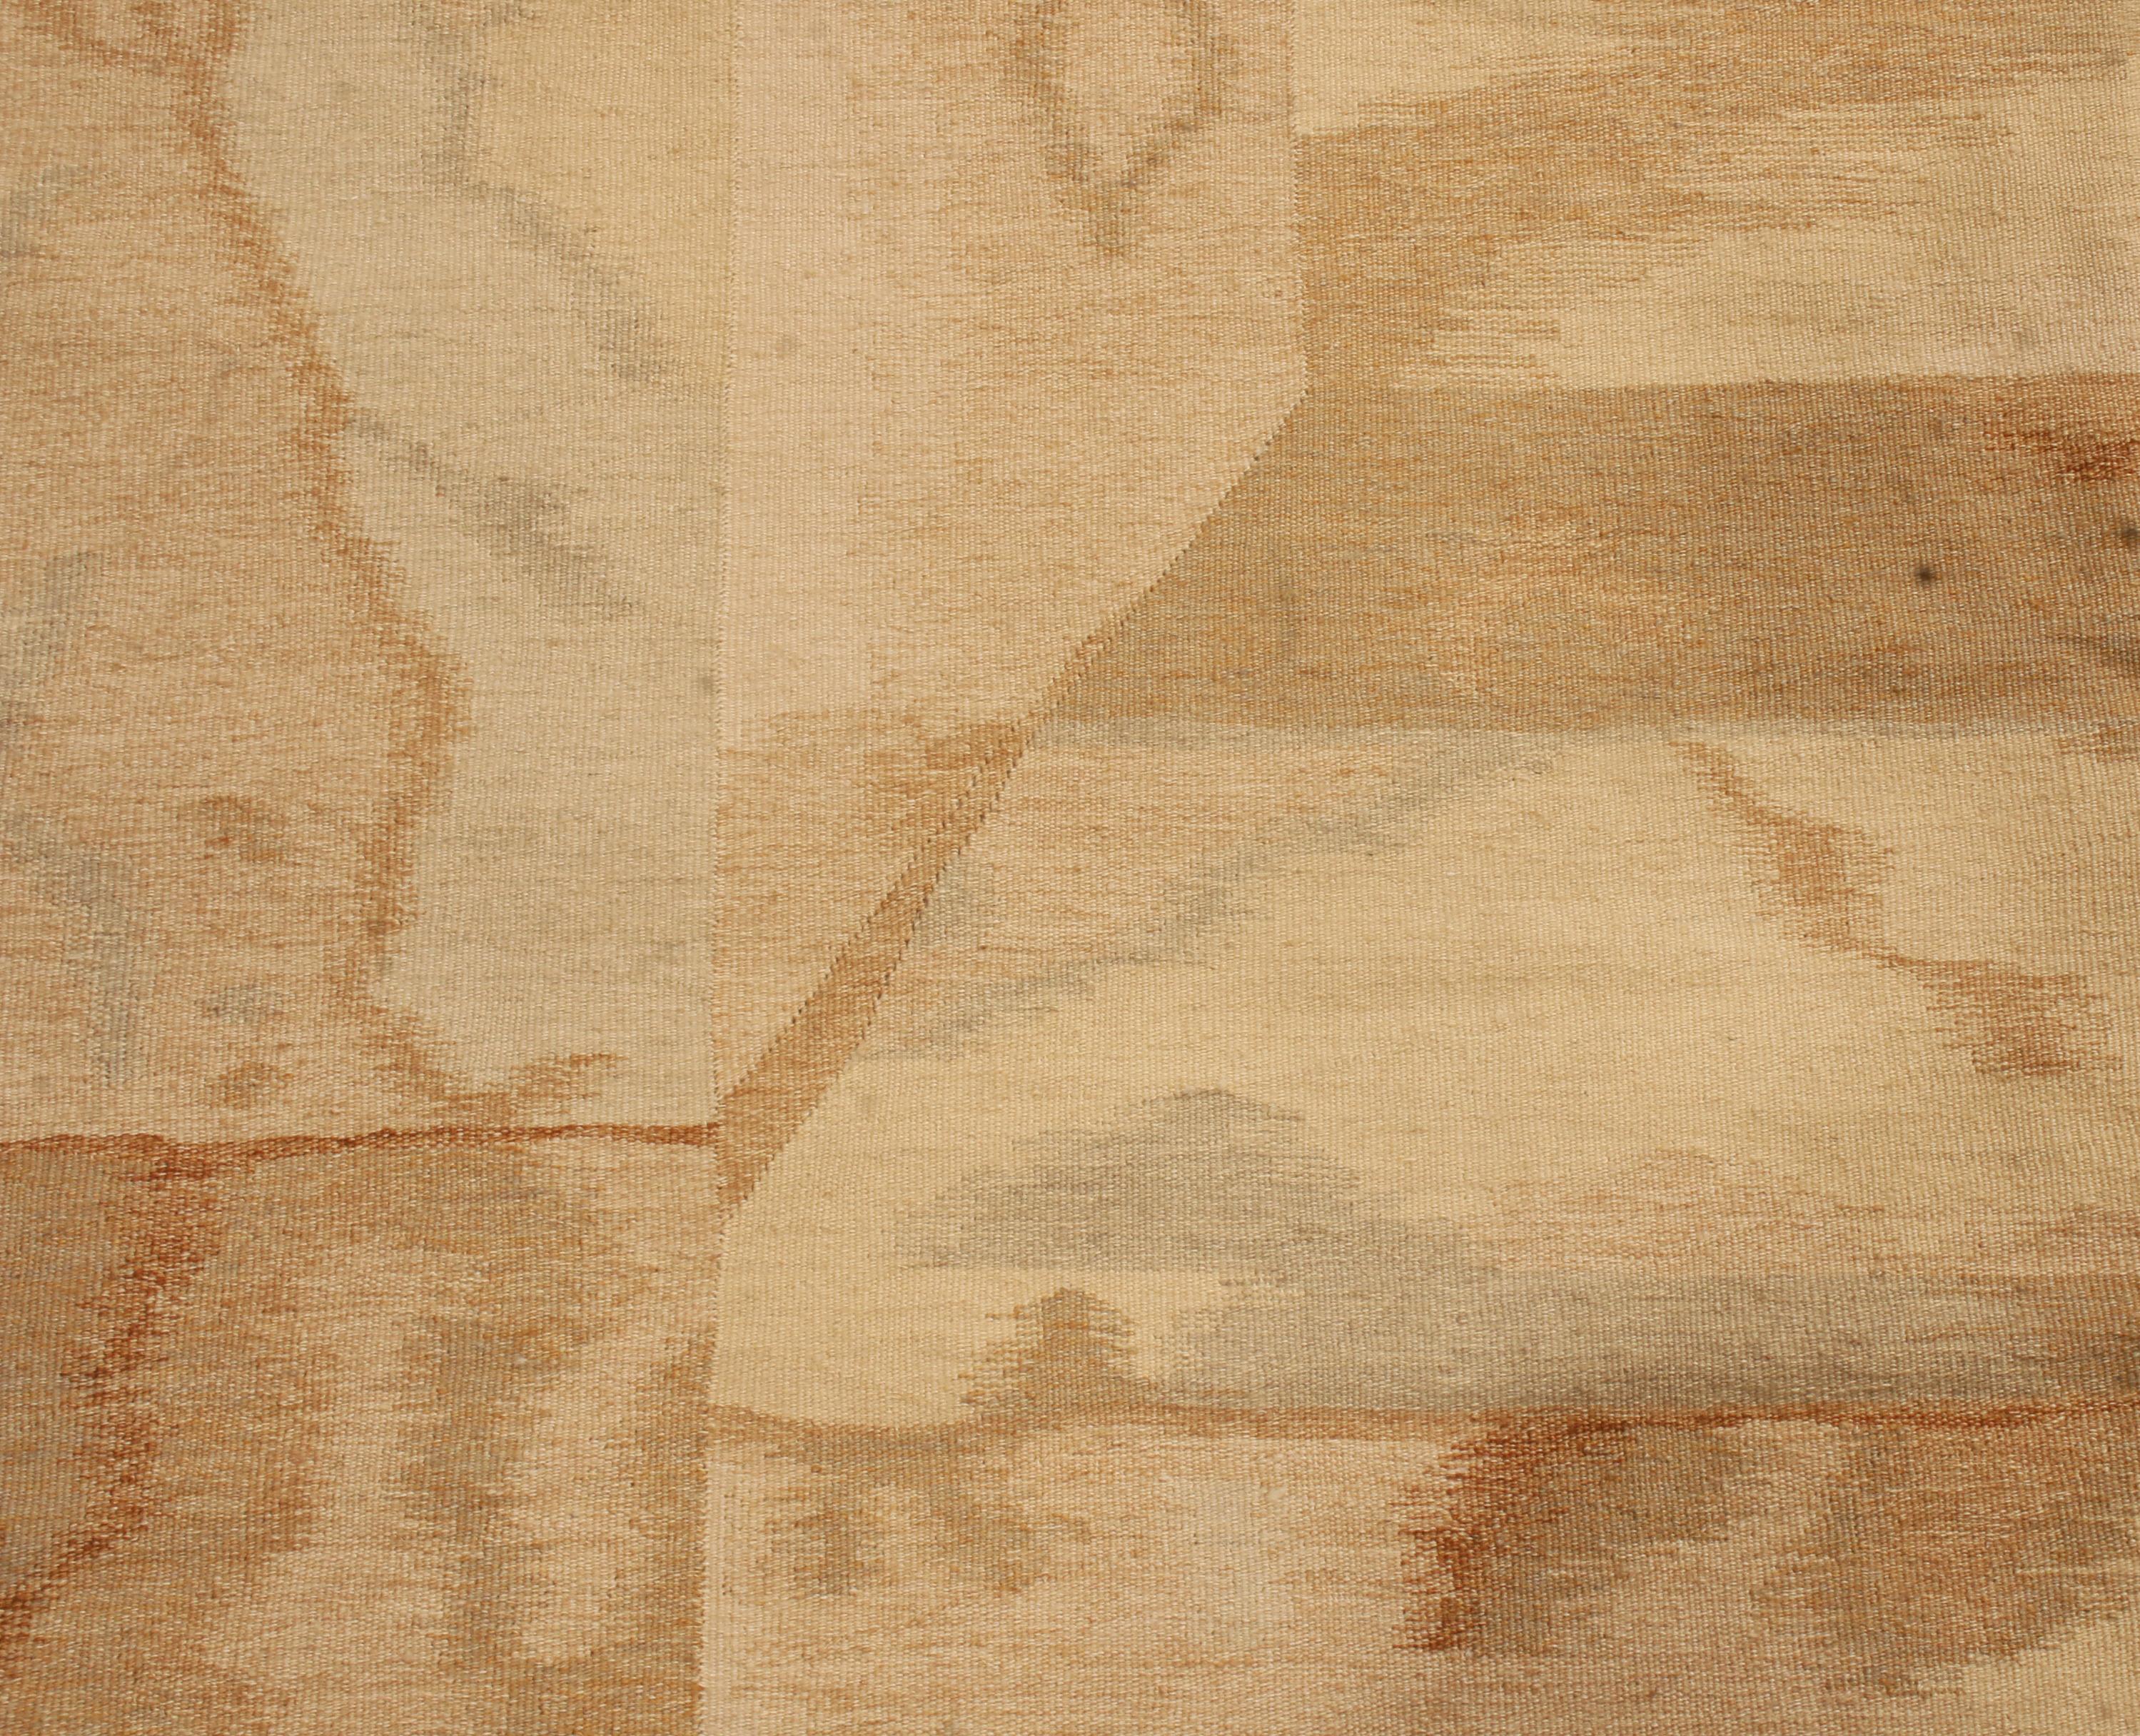 Dieser aus Rumänien stammende Wollteppich aus der Mitte des Jahrhunderts zeigt ein kontinentales Flachgewebe-Design, das aus hochwertiger Wolle handgeknüpft ist. Die geradlinigen, dreidimensionalen Muster, die von der Mitte aus nach außen